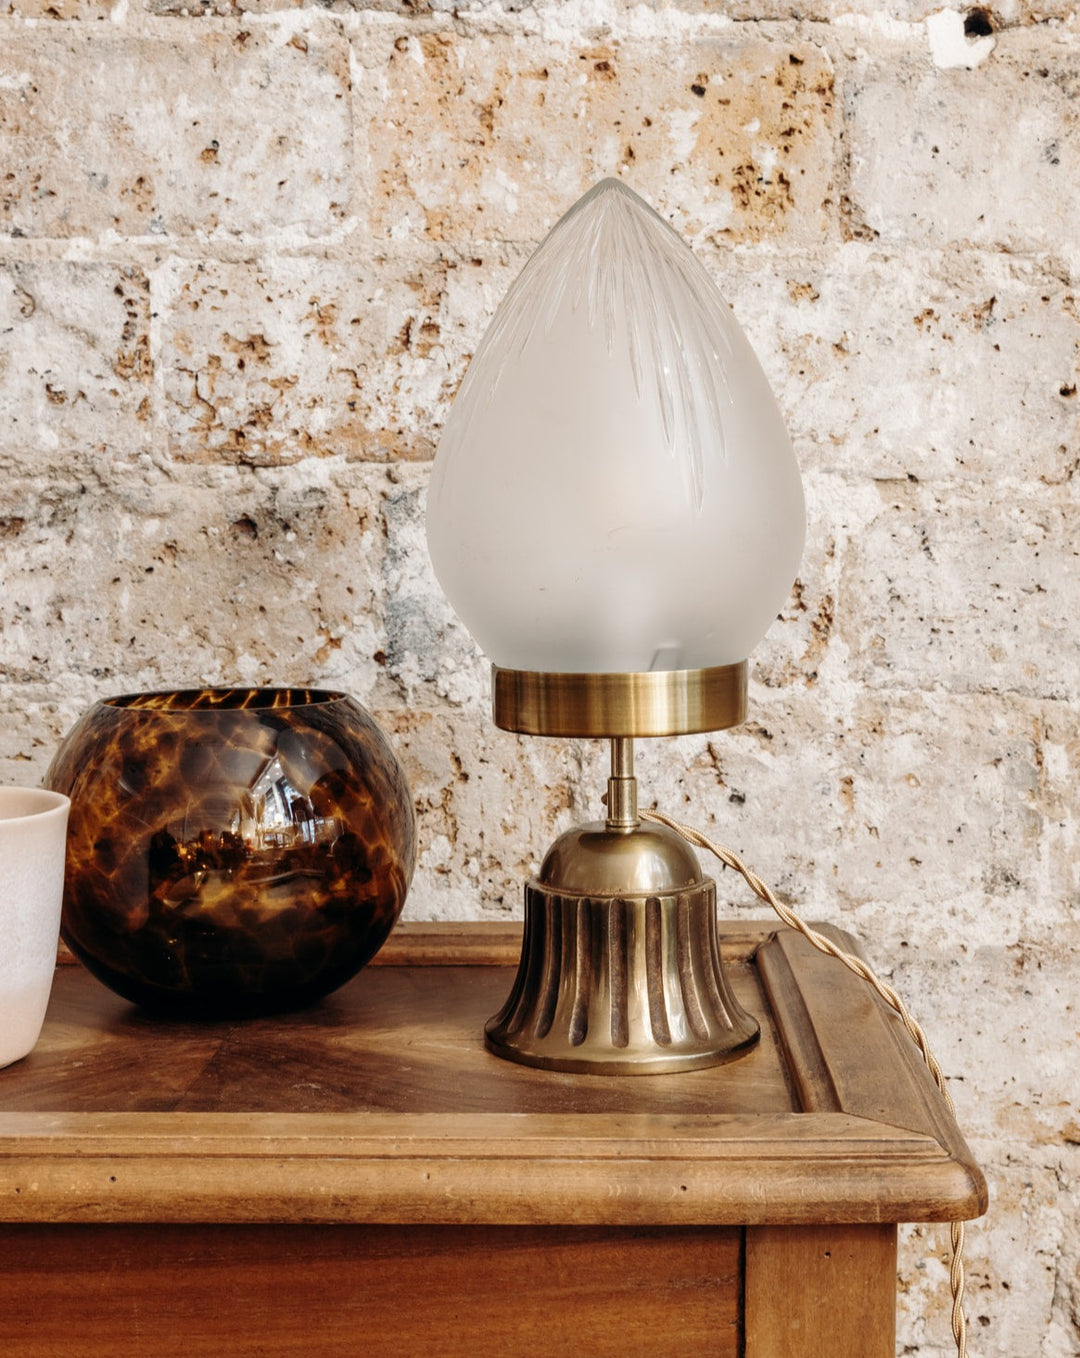 Colette, the vintage lamp N°221